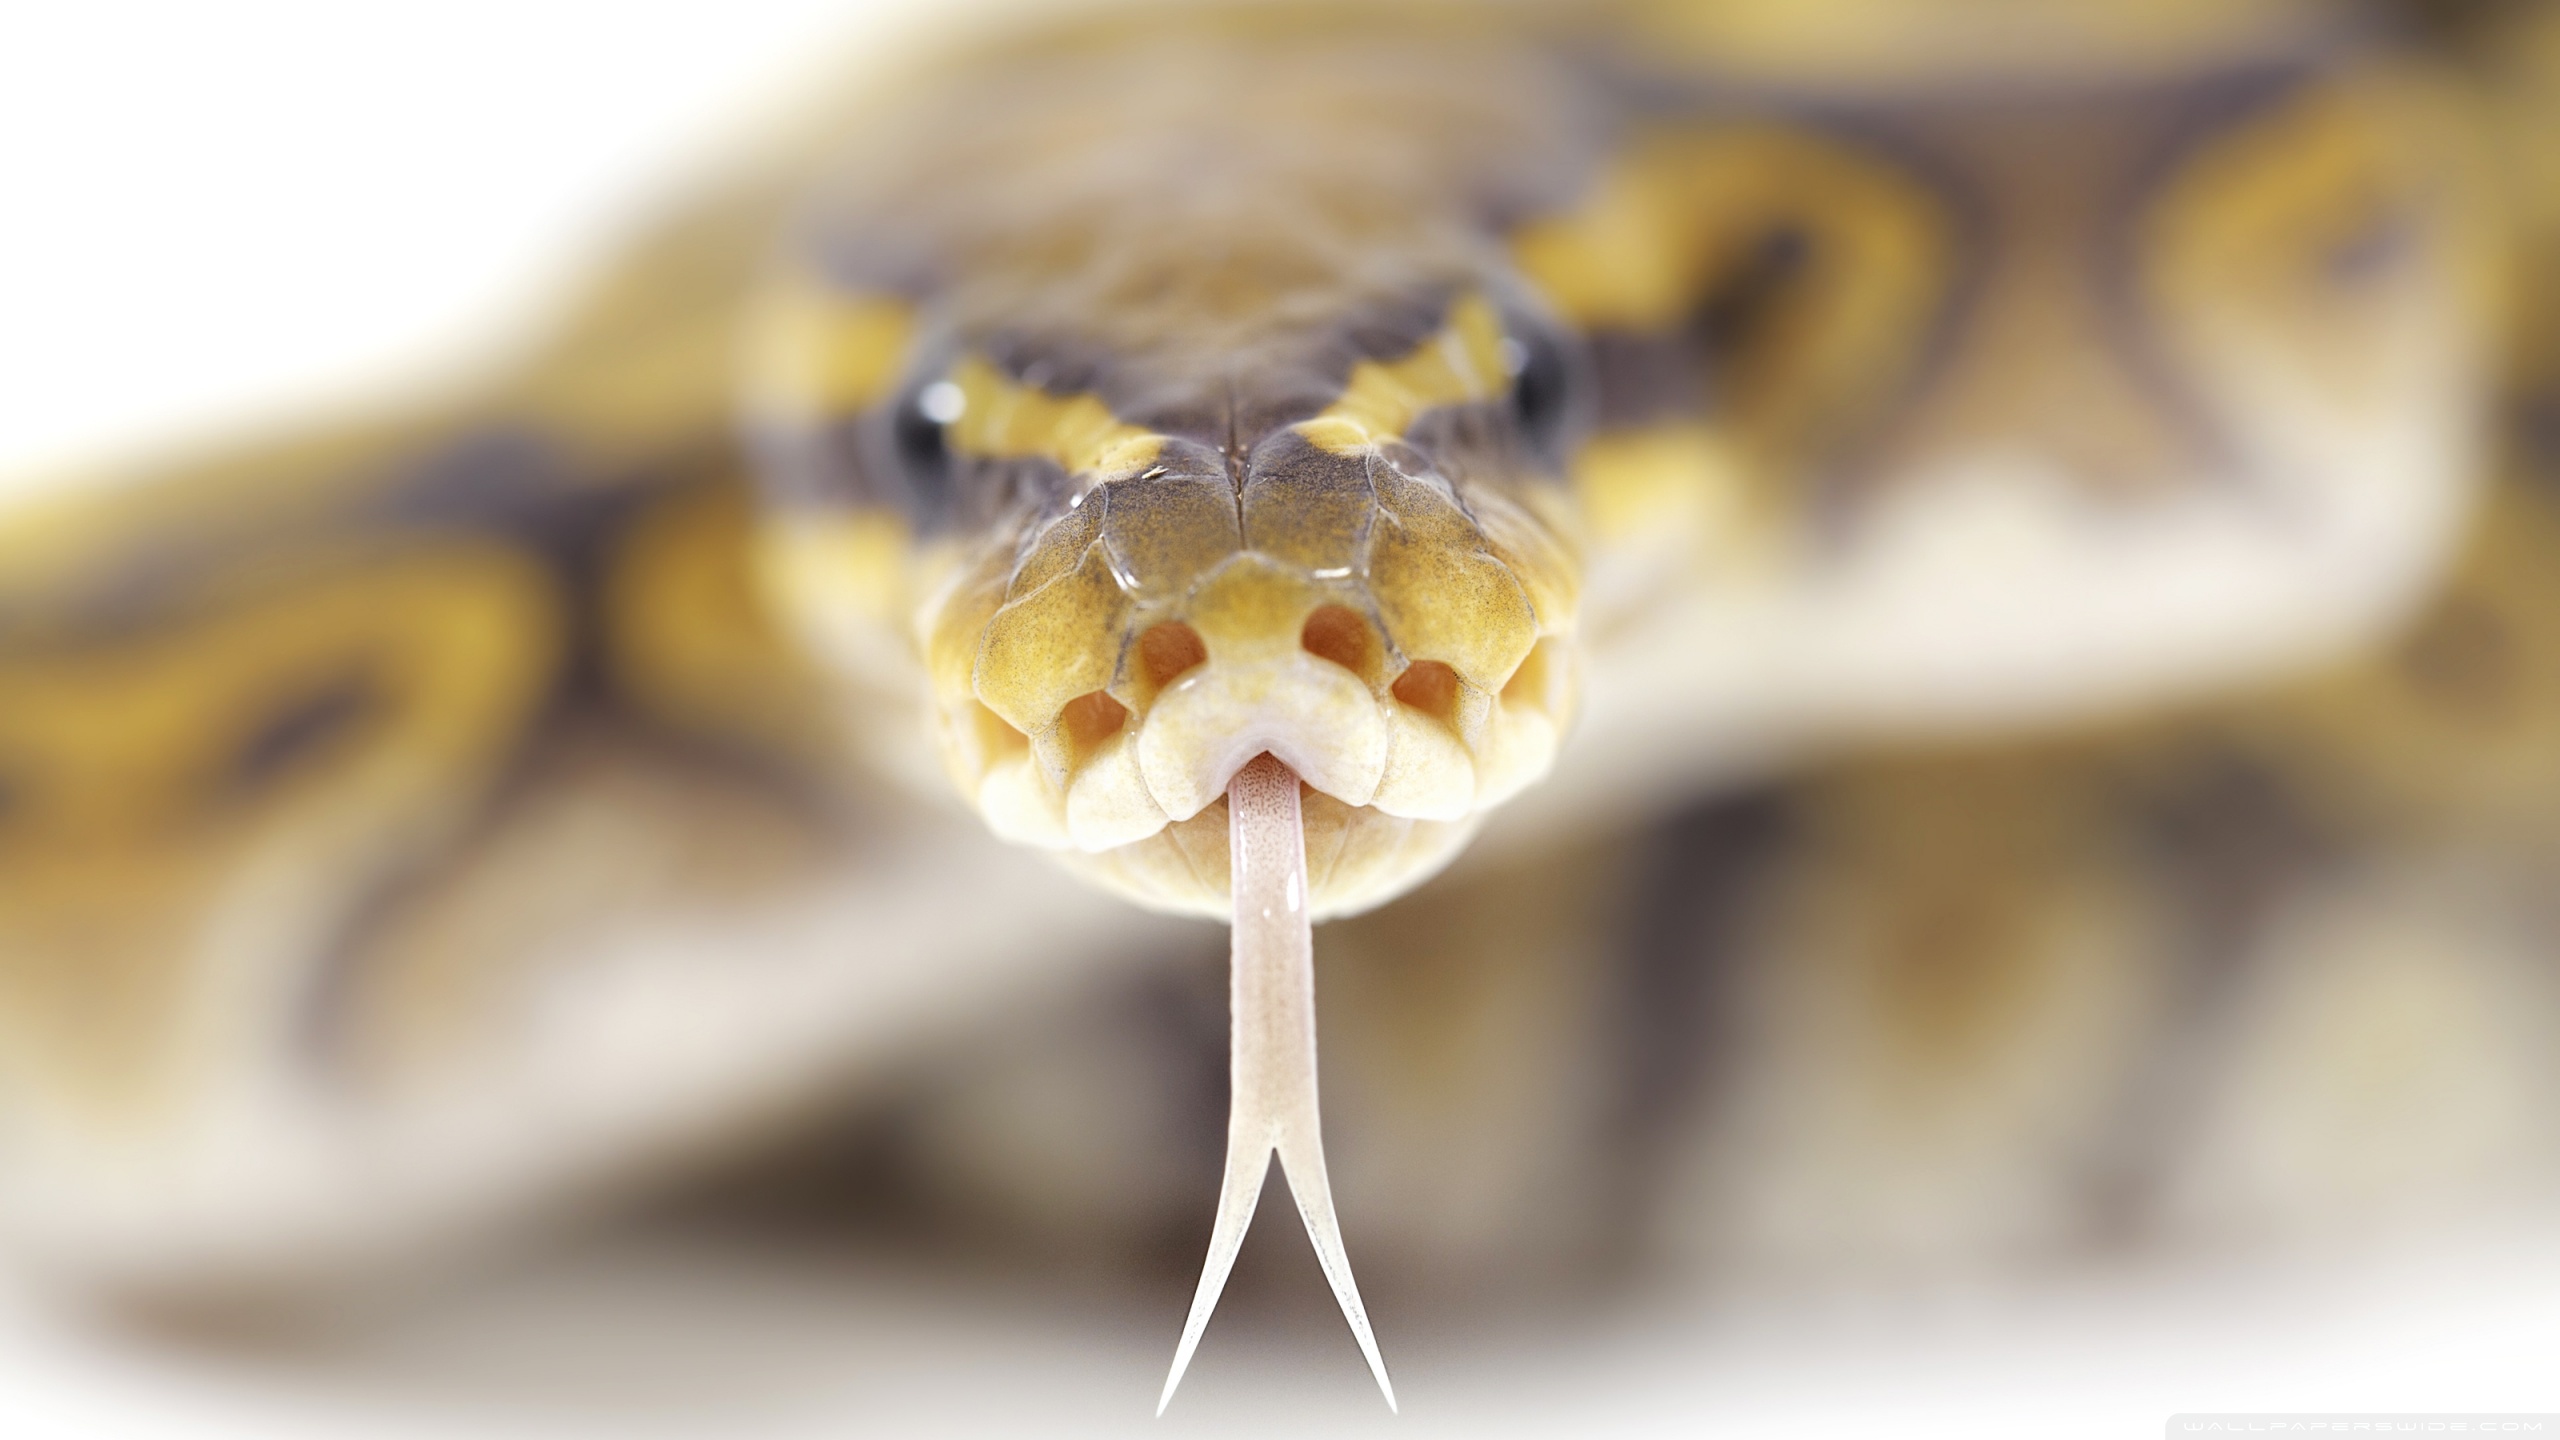 Descarga gratis la imagen Animales, Serpiente en el escritorio de tu PC